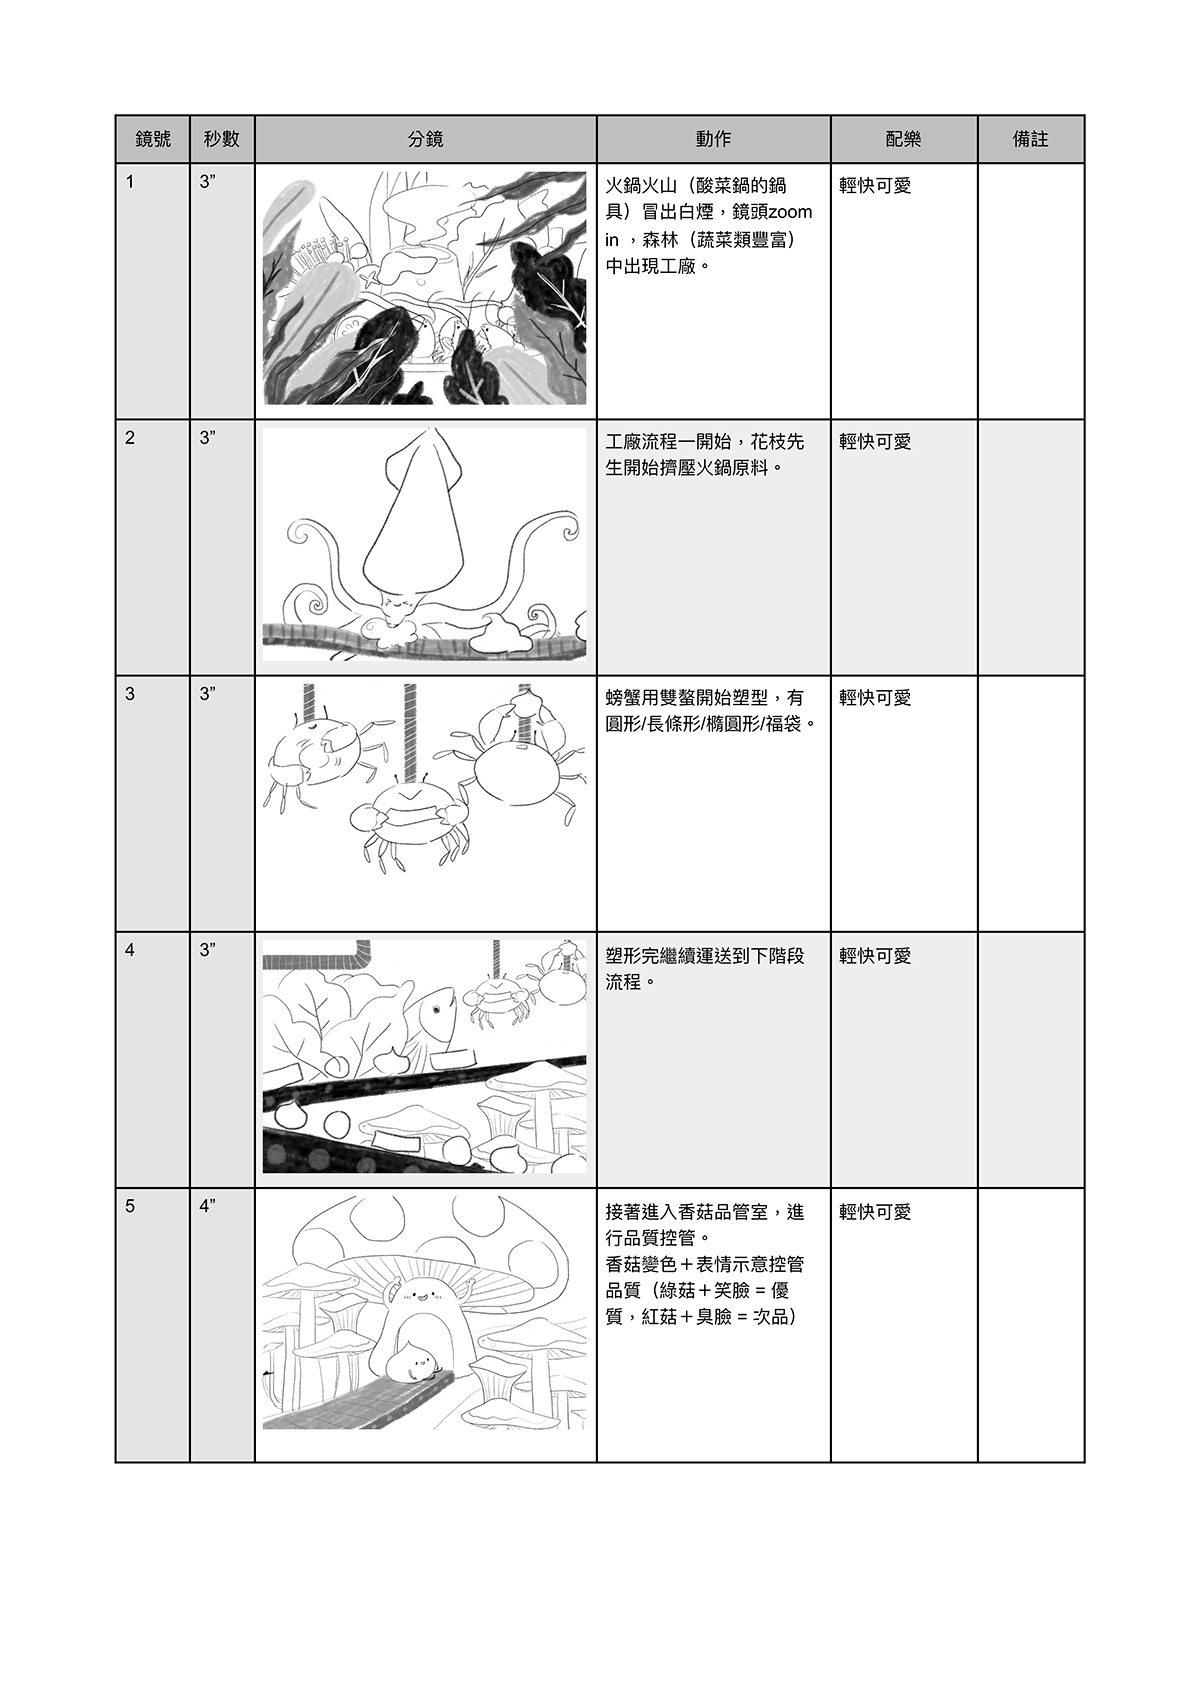 火鍋料網站辦桌美食動畫插畫動畫